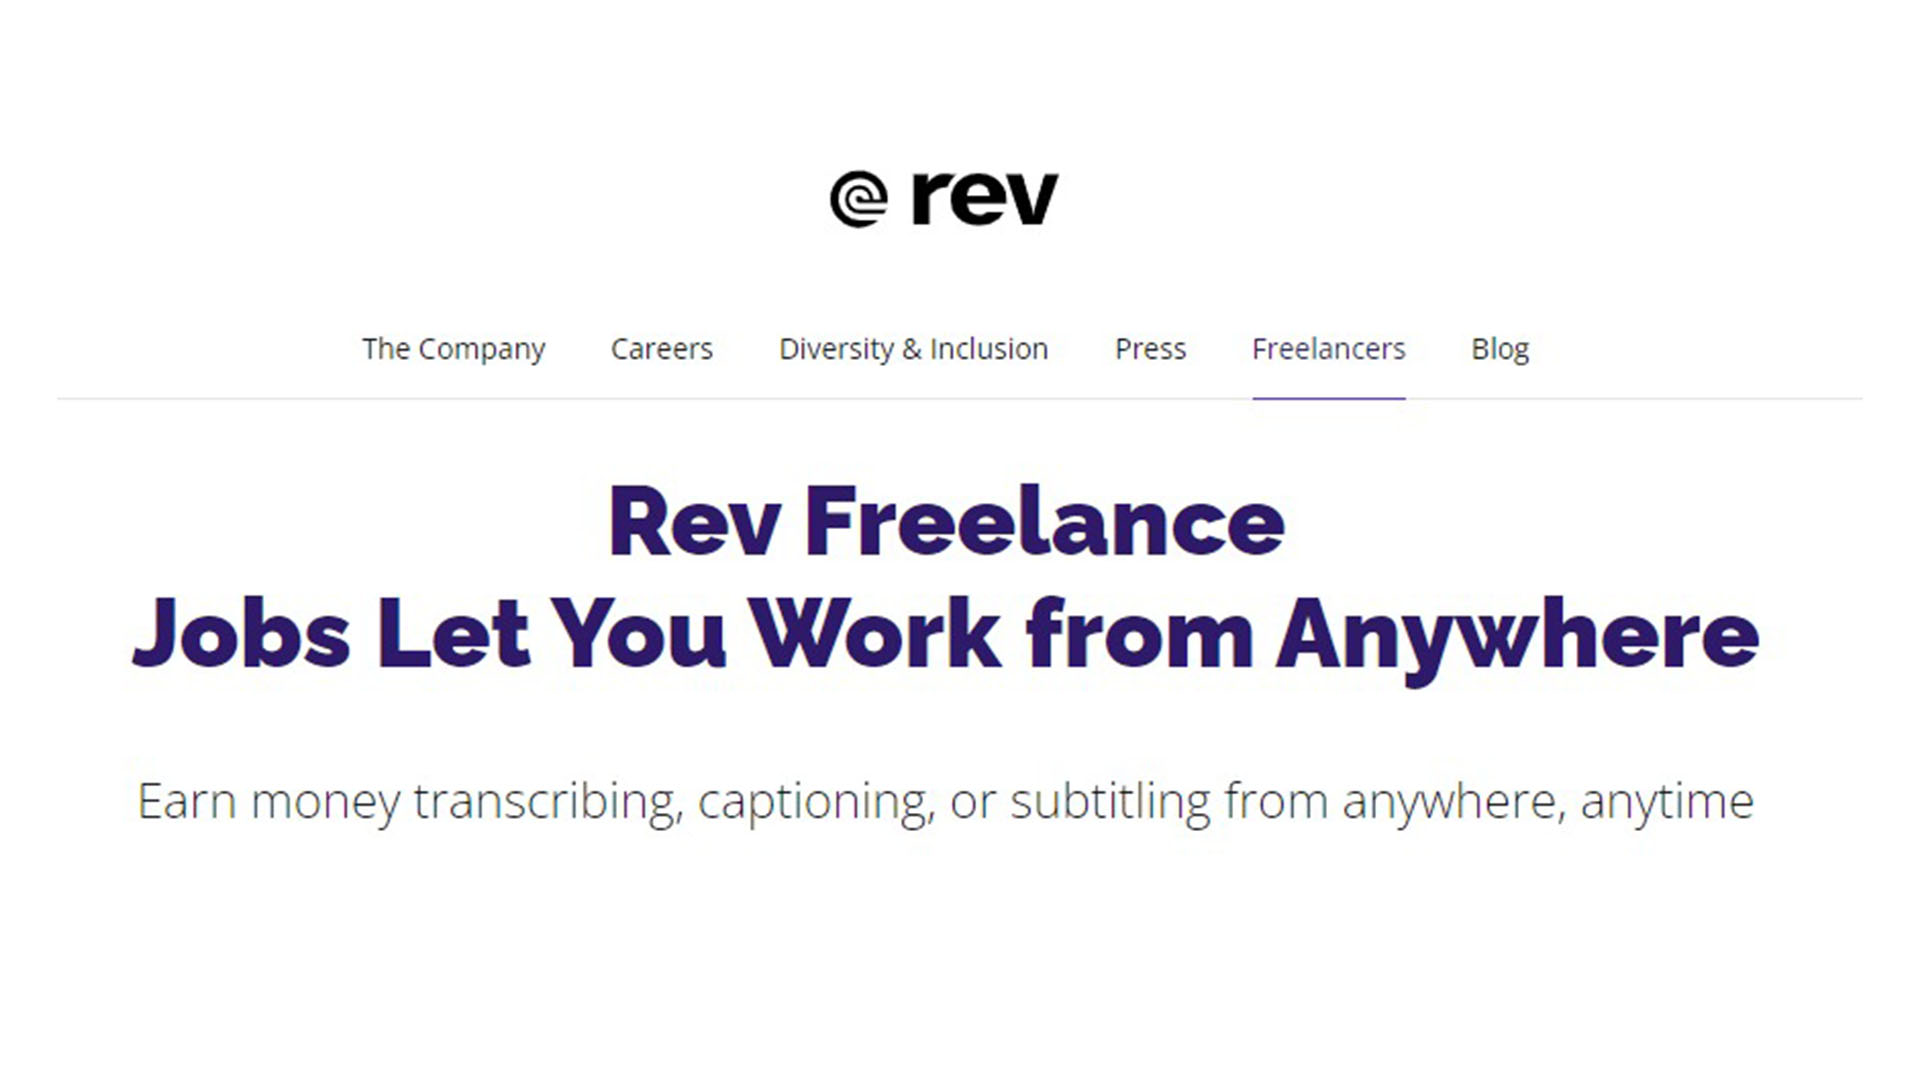 En Rev hay salarios mensuales que rondan los 1.500 dólares